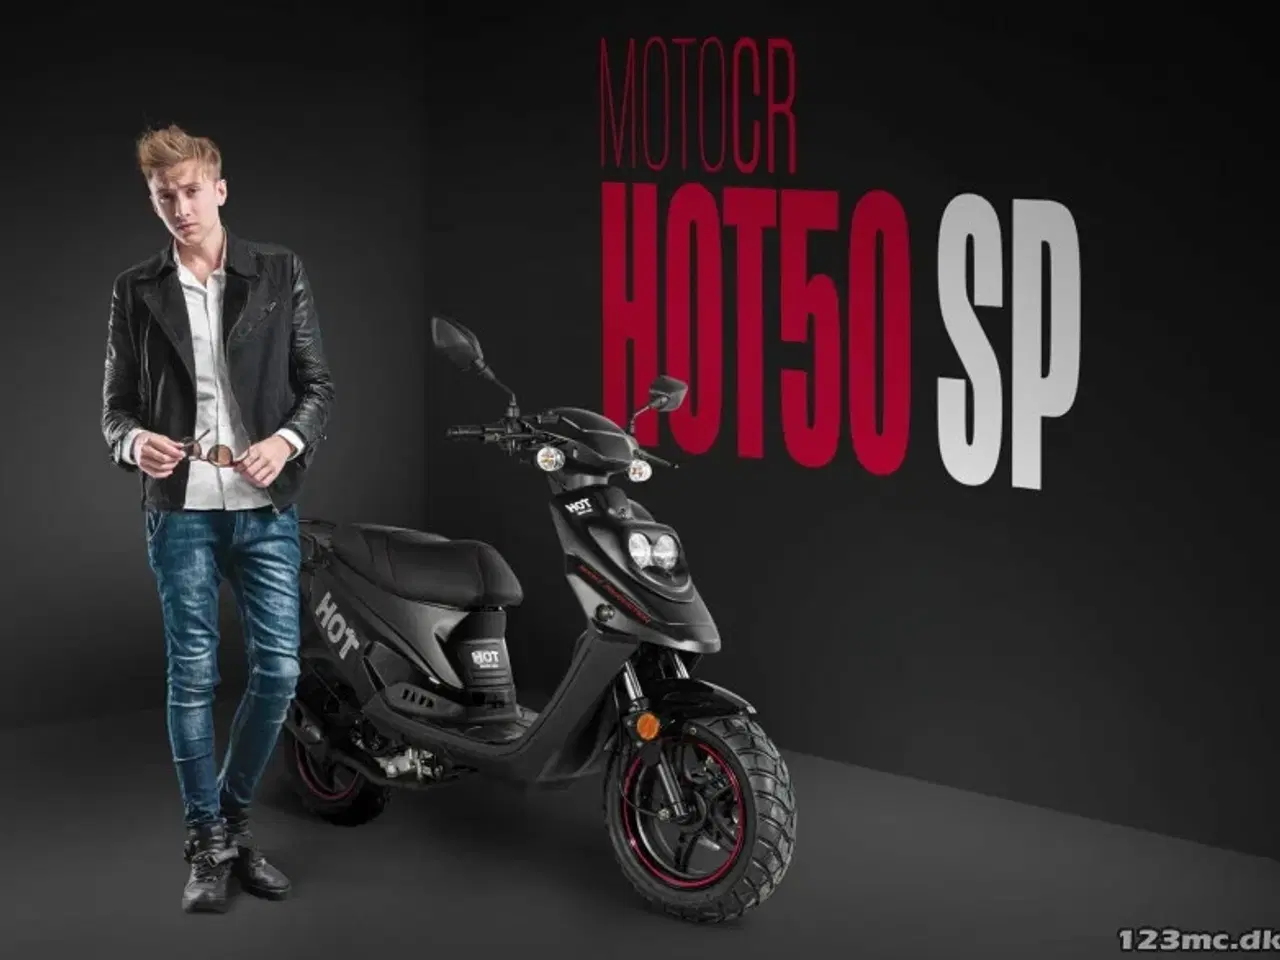 Billede 2 - MotoCR Hot 50 SP